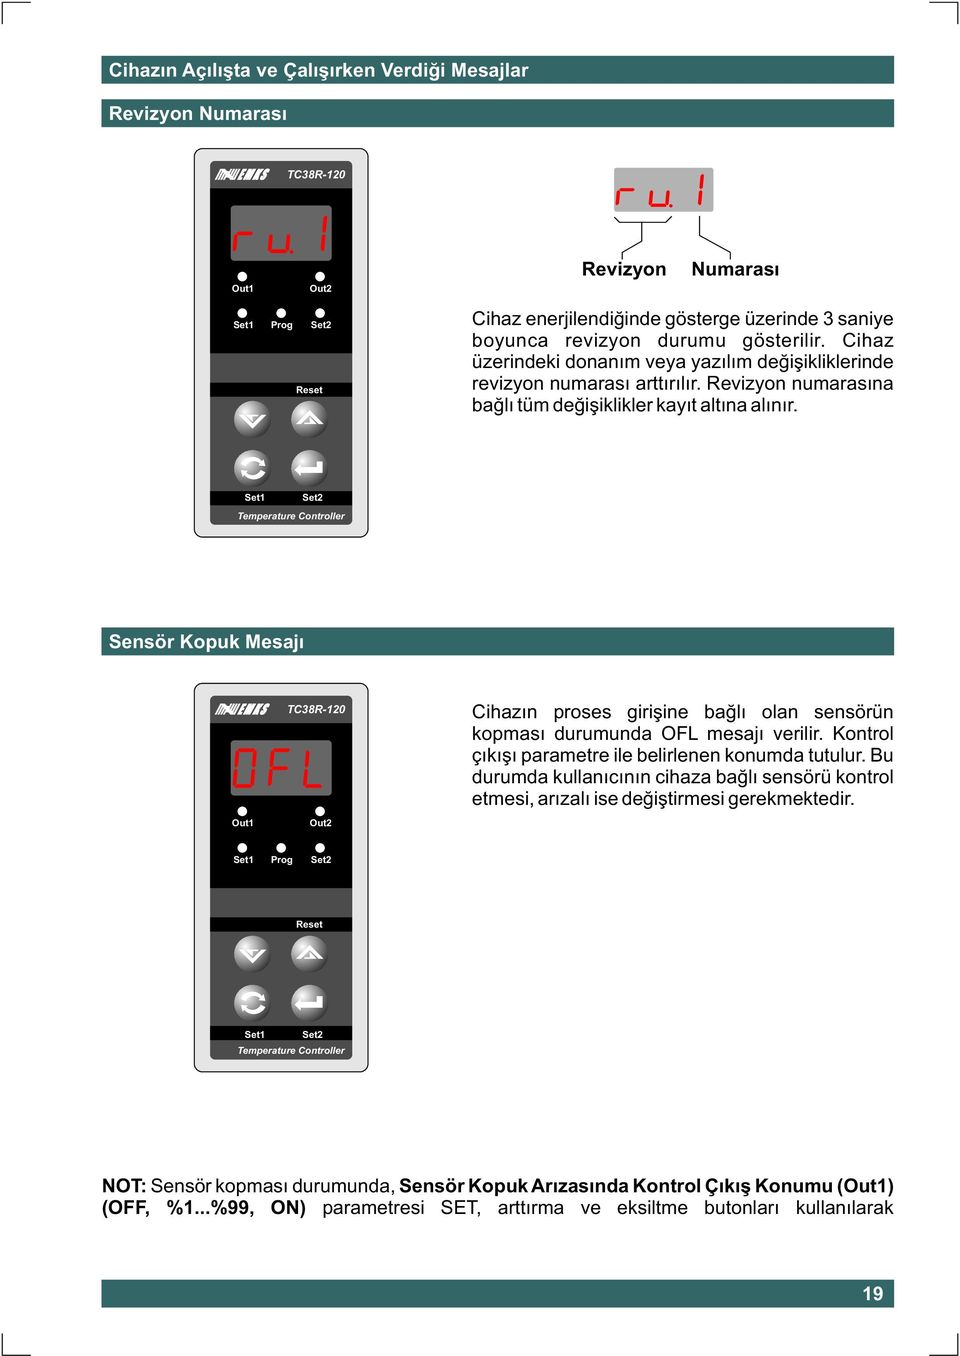 Temperature Controller Sensör Kopuk Mesajý TC38R-120 Cihazýn proses giriþine baðlý olan sensörün kopmasý durumunda OFL mesajý verilir. Kontrol çýkýþý parametre ile belirlenen konumda tutulur.